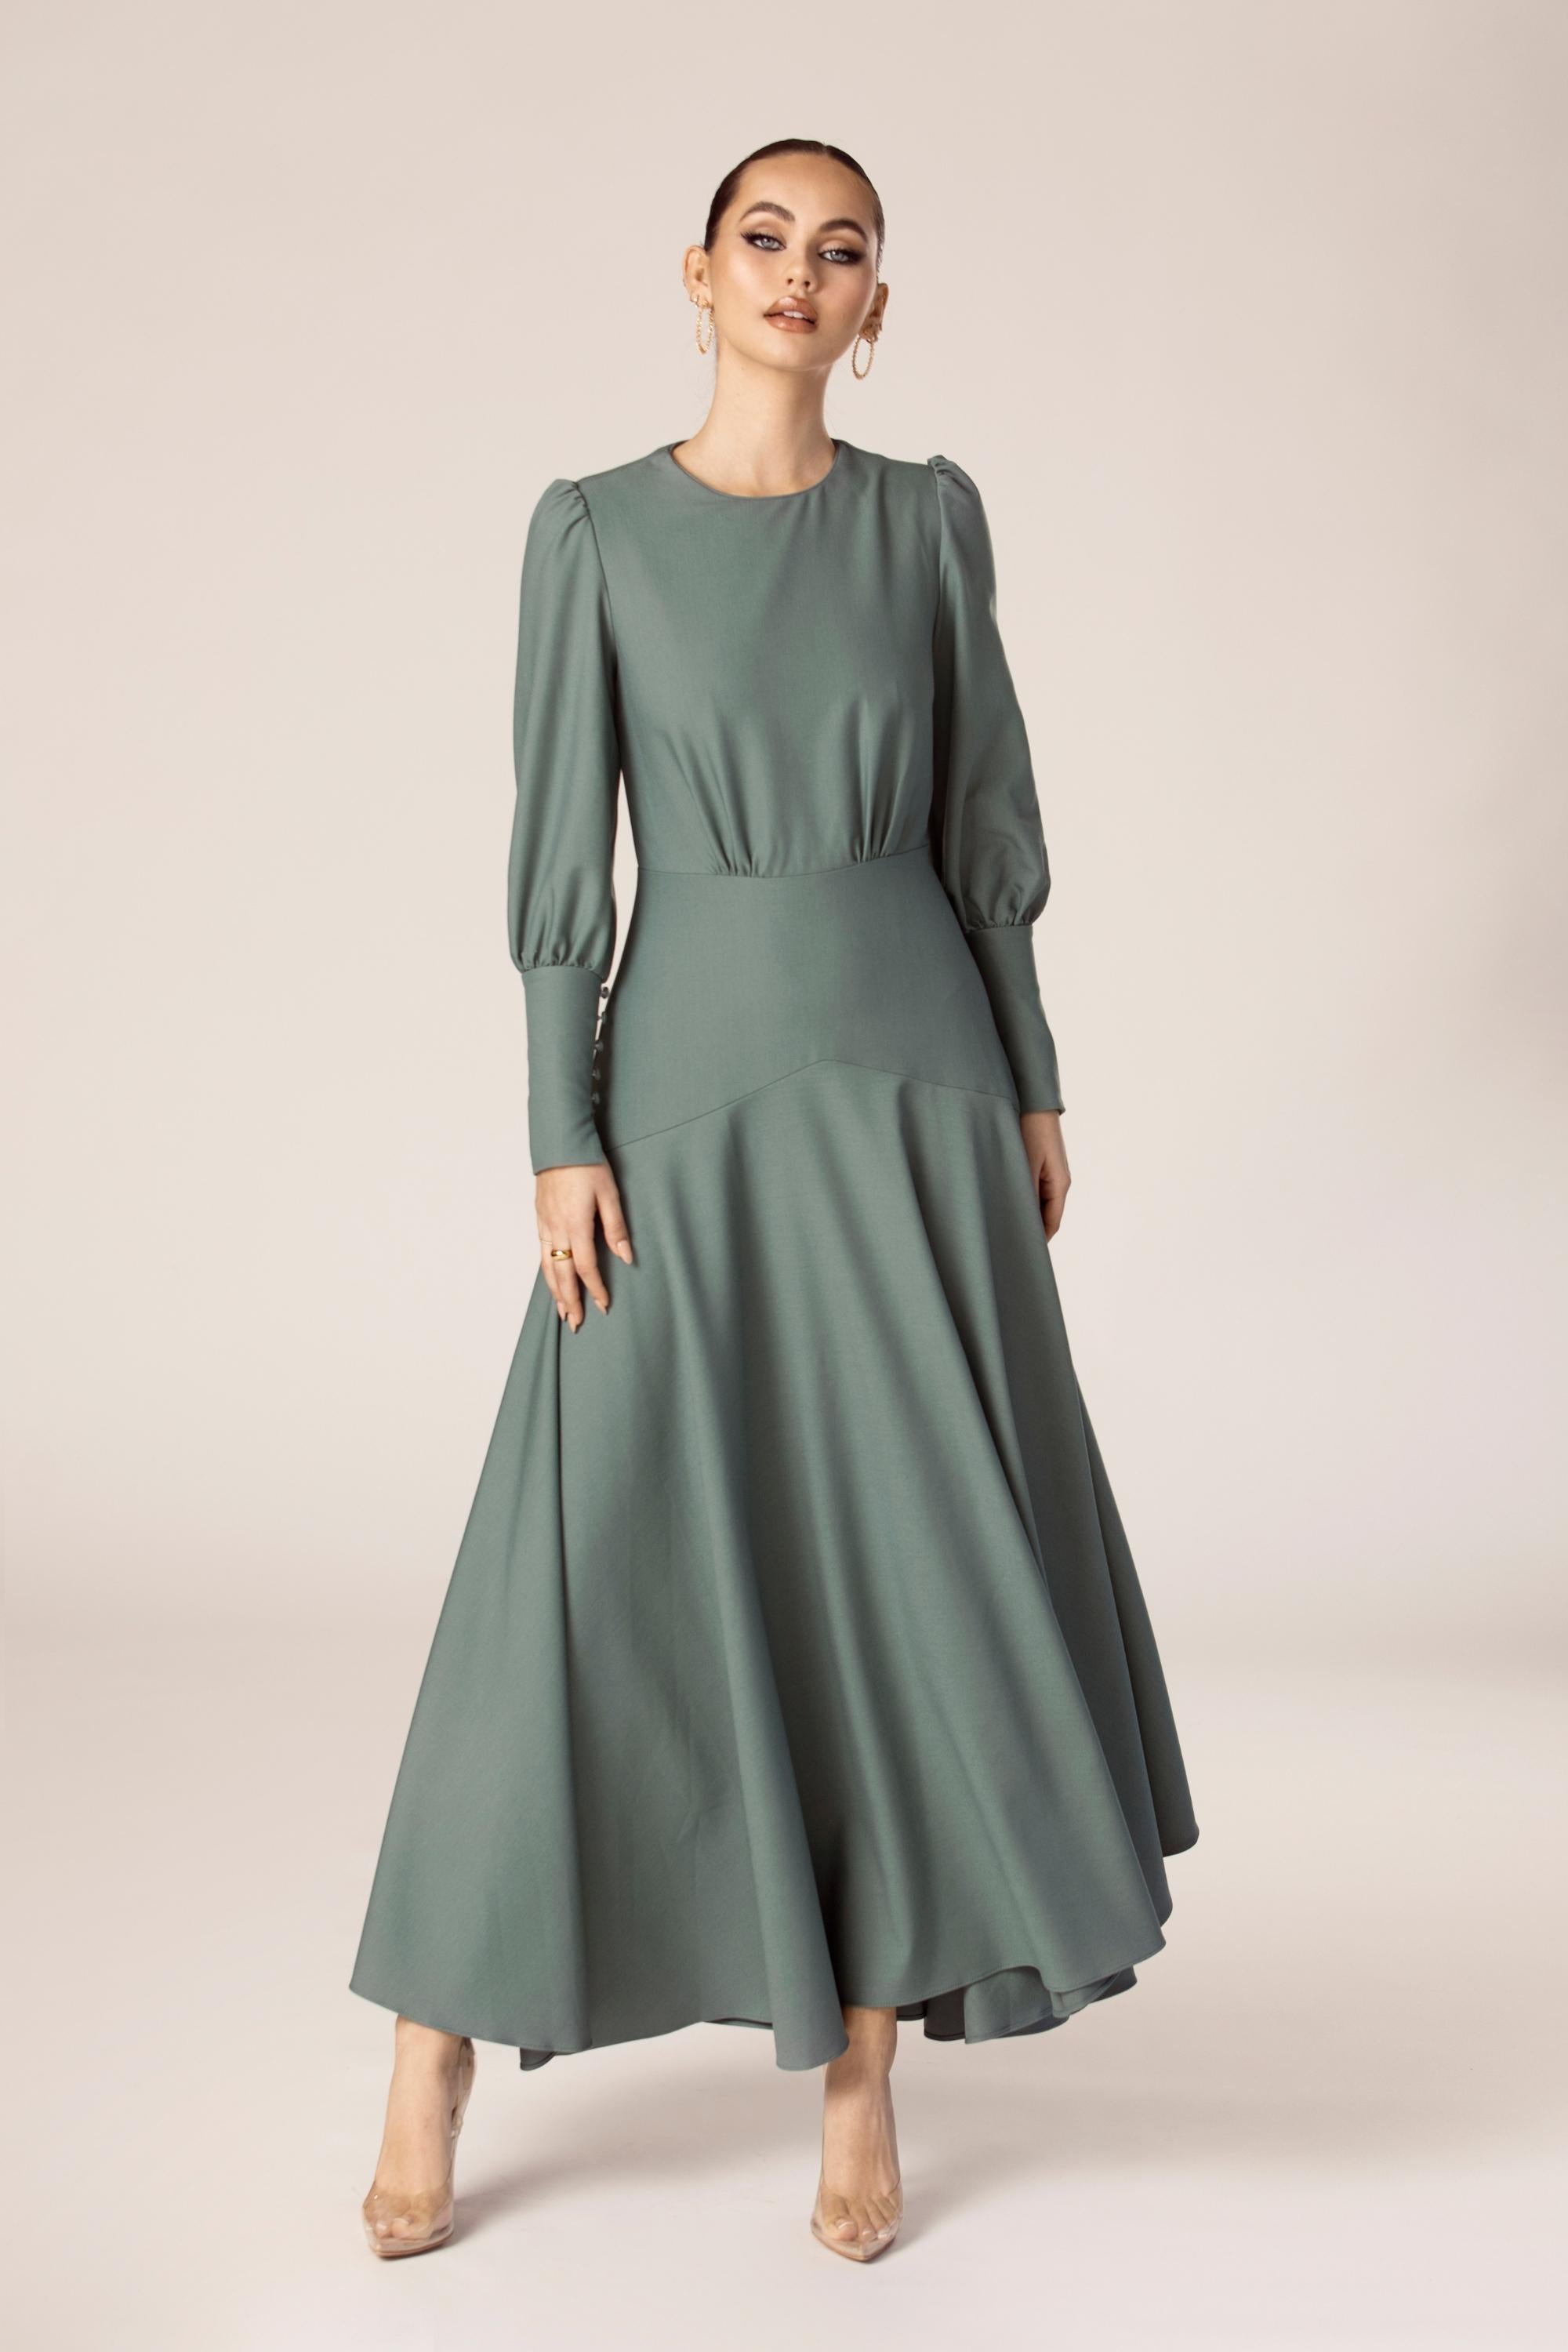 Buy Sea Green Evening Dress Arabic Kaftan Online MYPF1231 | MyBatua –  MyBatua.com